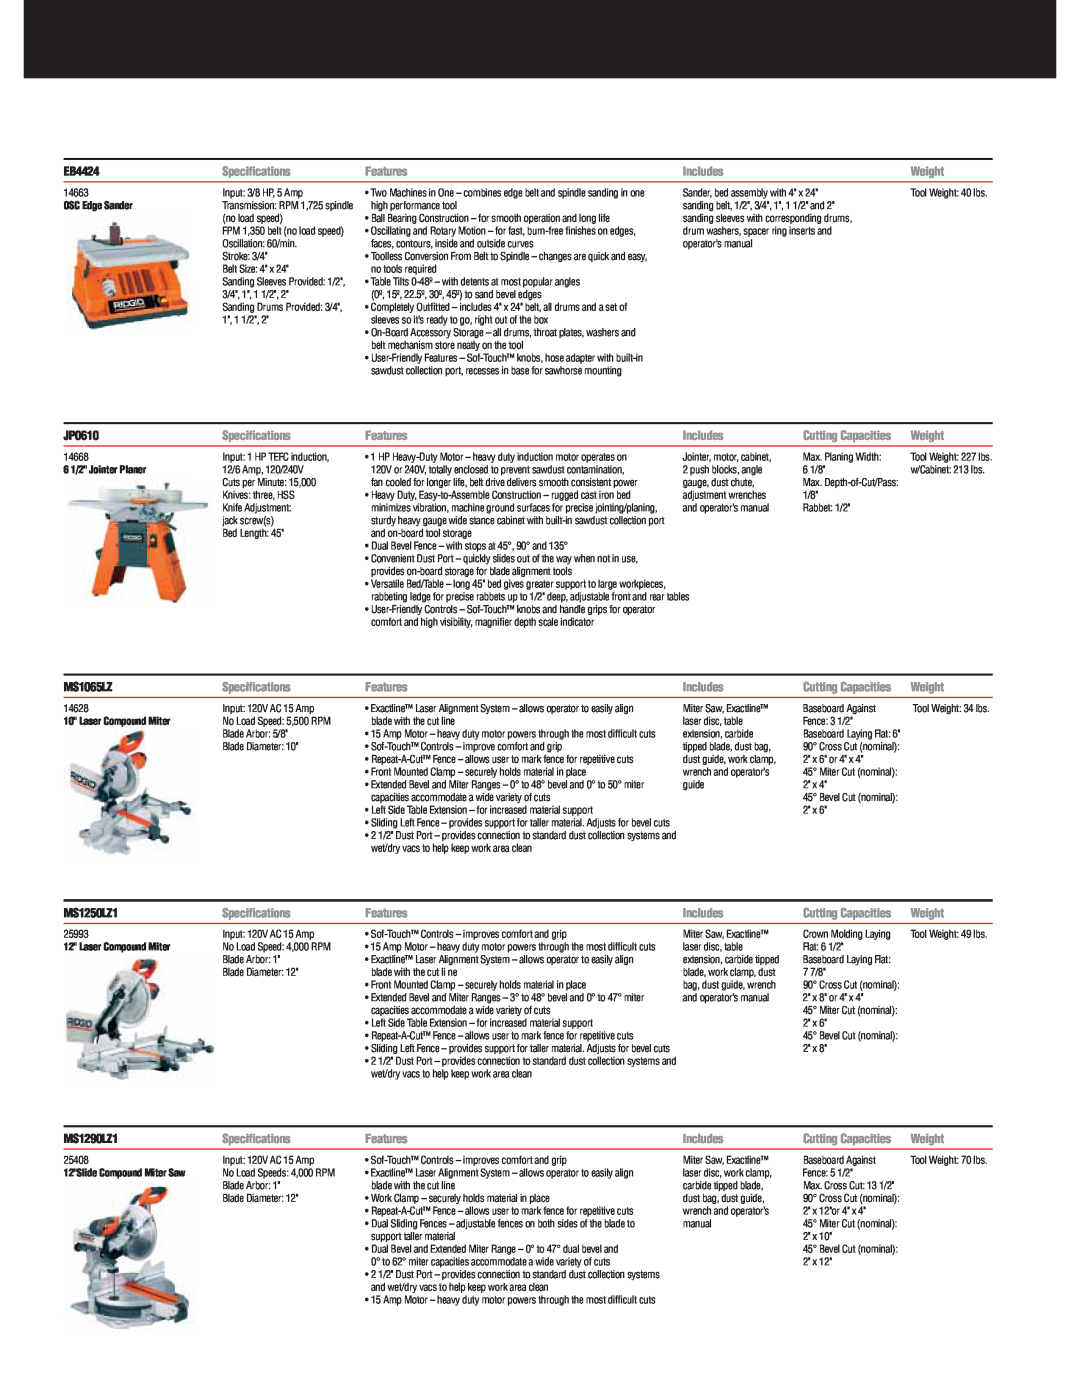 RIDGID R9213, R932 specifications EB4424, JP0610, MS1065LZ, MS1250LZ1, MS1290LZ1 